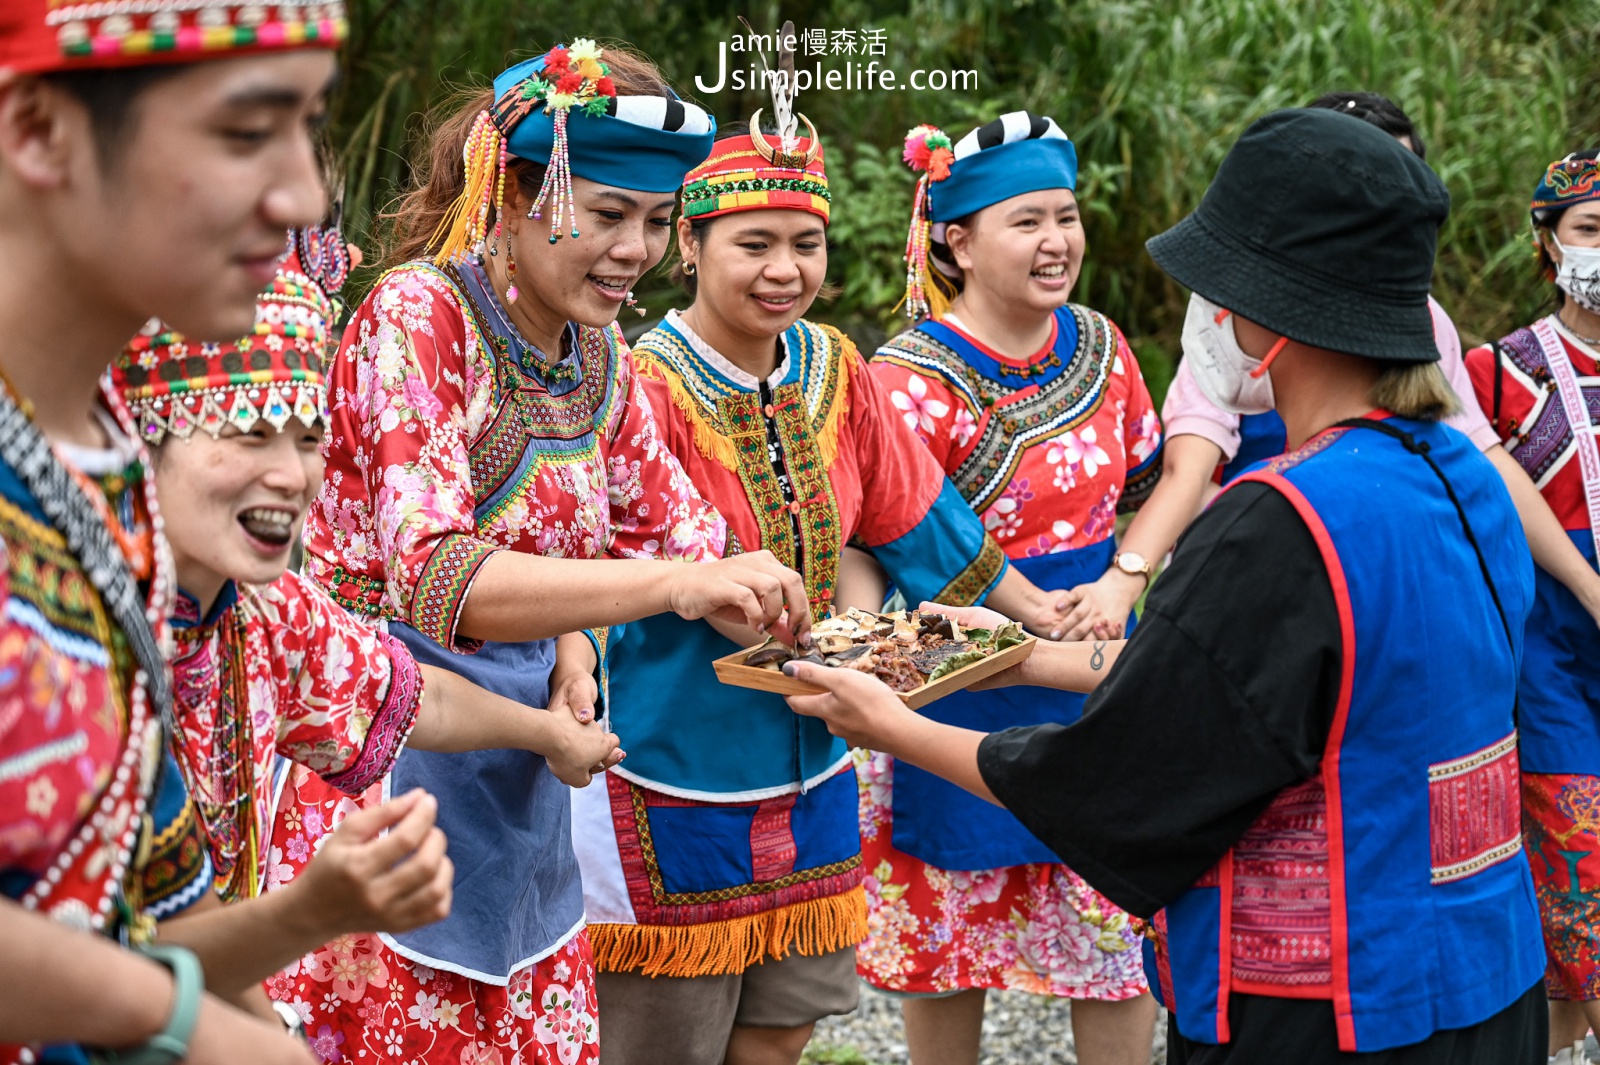 屏東恆春鎮 牡丹鄉 高士排灣族傳統婚禮    一邊歌舞邊享用麻糬與豬肉